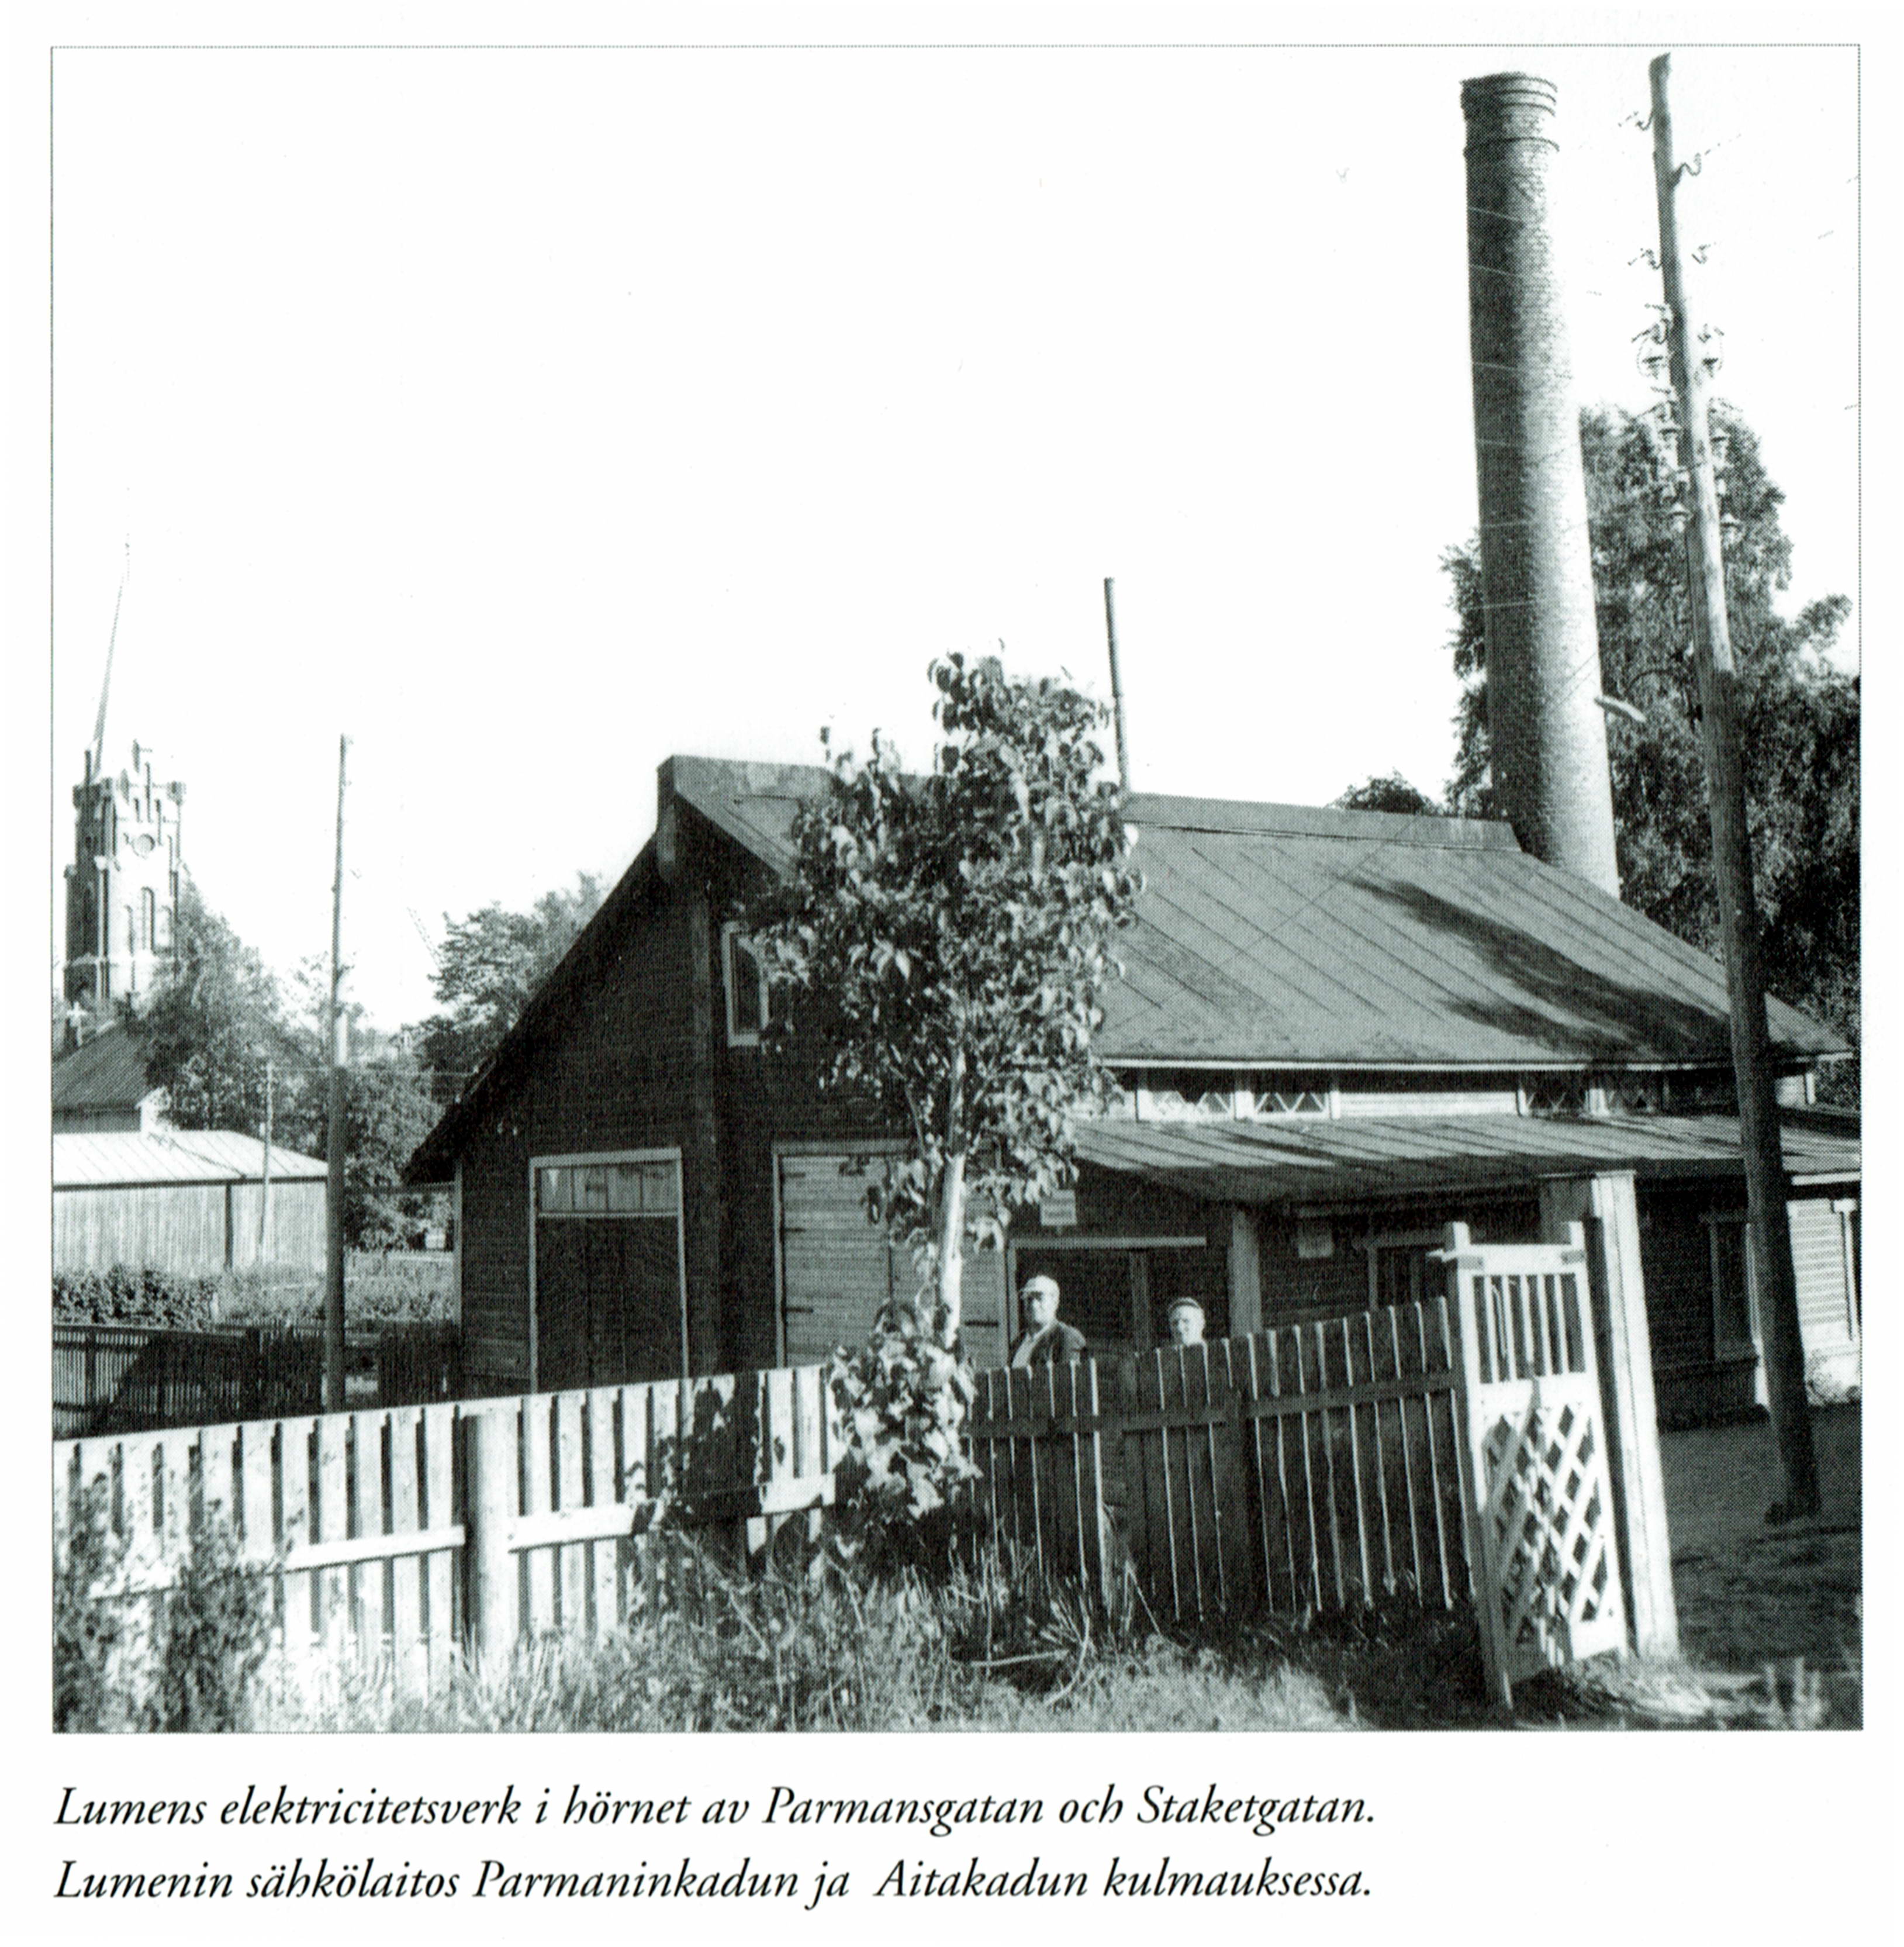 Så här såg Lumens elektricitetsverk ut på 1960-talet, där det stod i hörnet av Parmansgatan och Staketgatan. Kristinestads nya kyrka syns i bakgrunden. Fotot ur Kristinestad Sparbanks jubileumsbok.